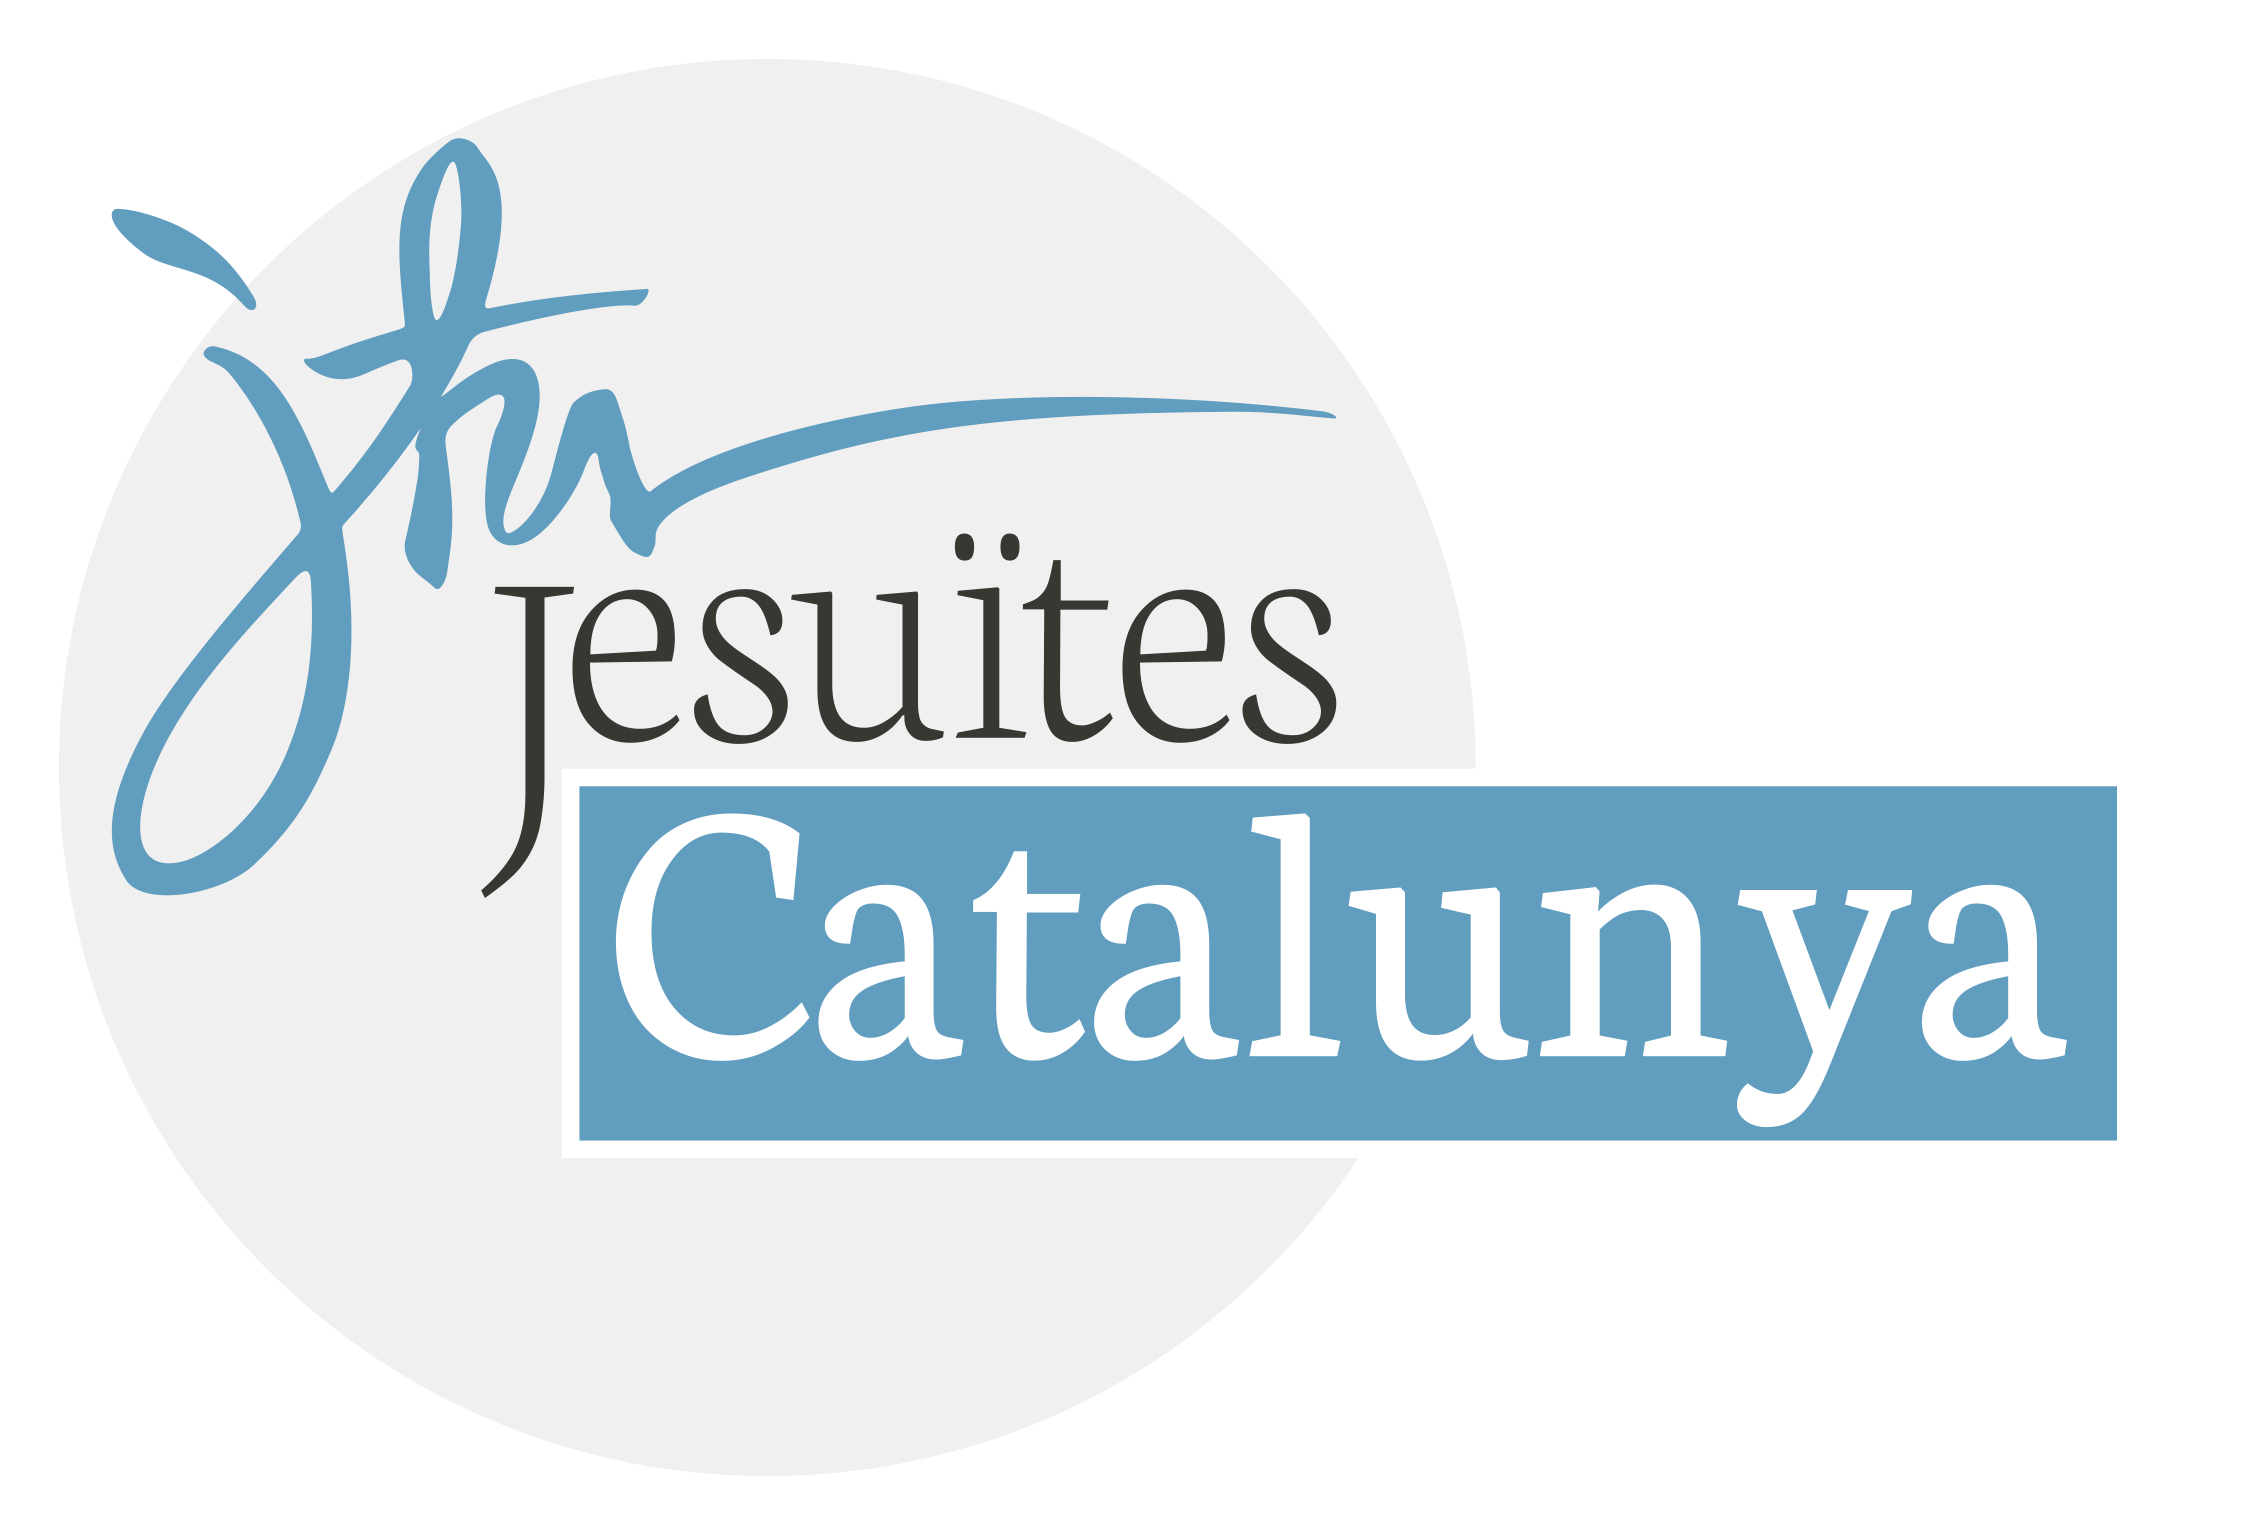 Jesuïtes Catalunya